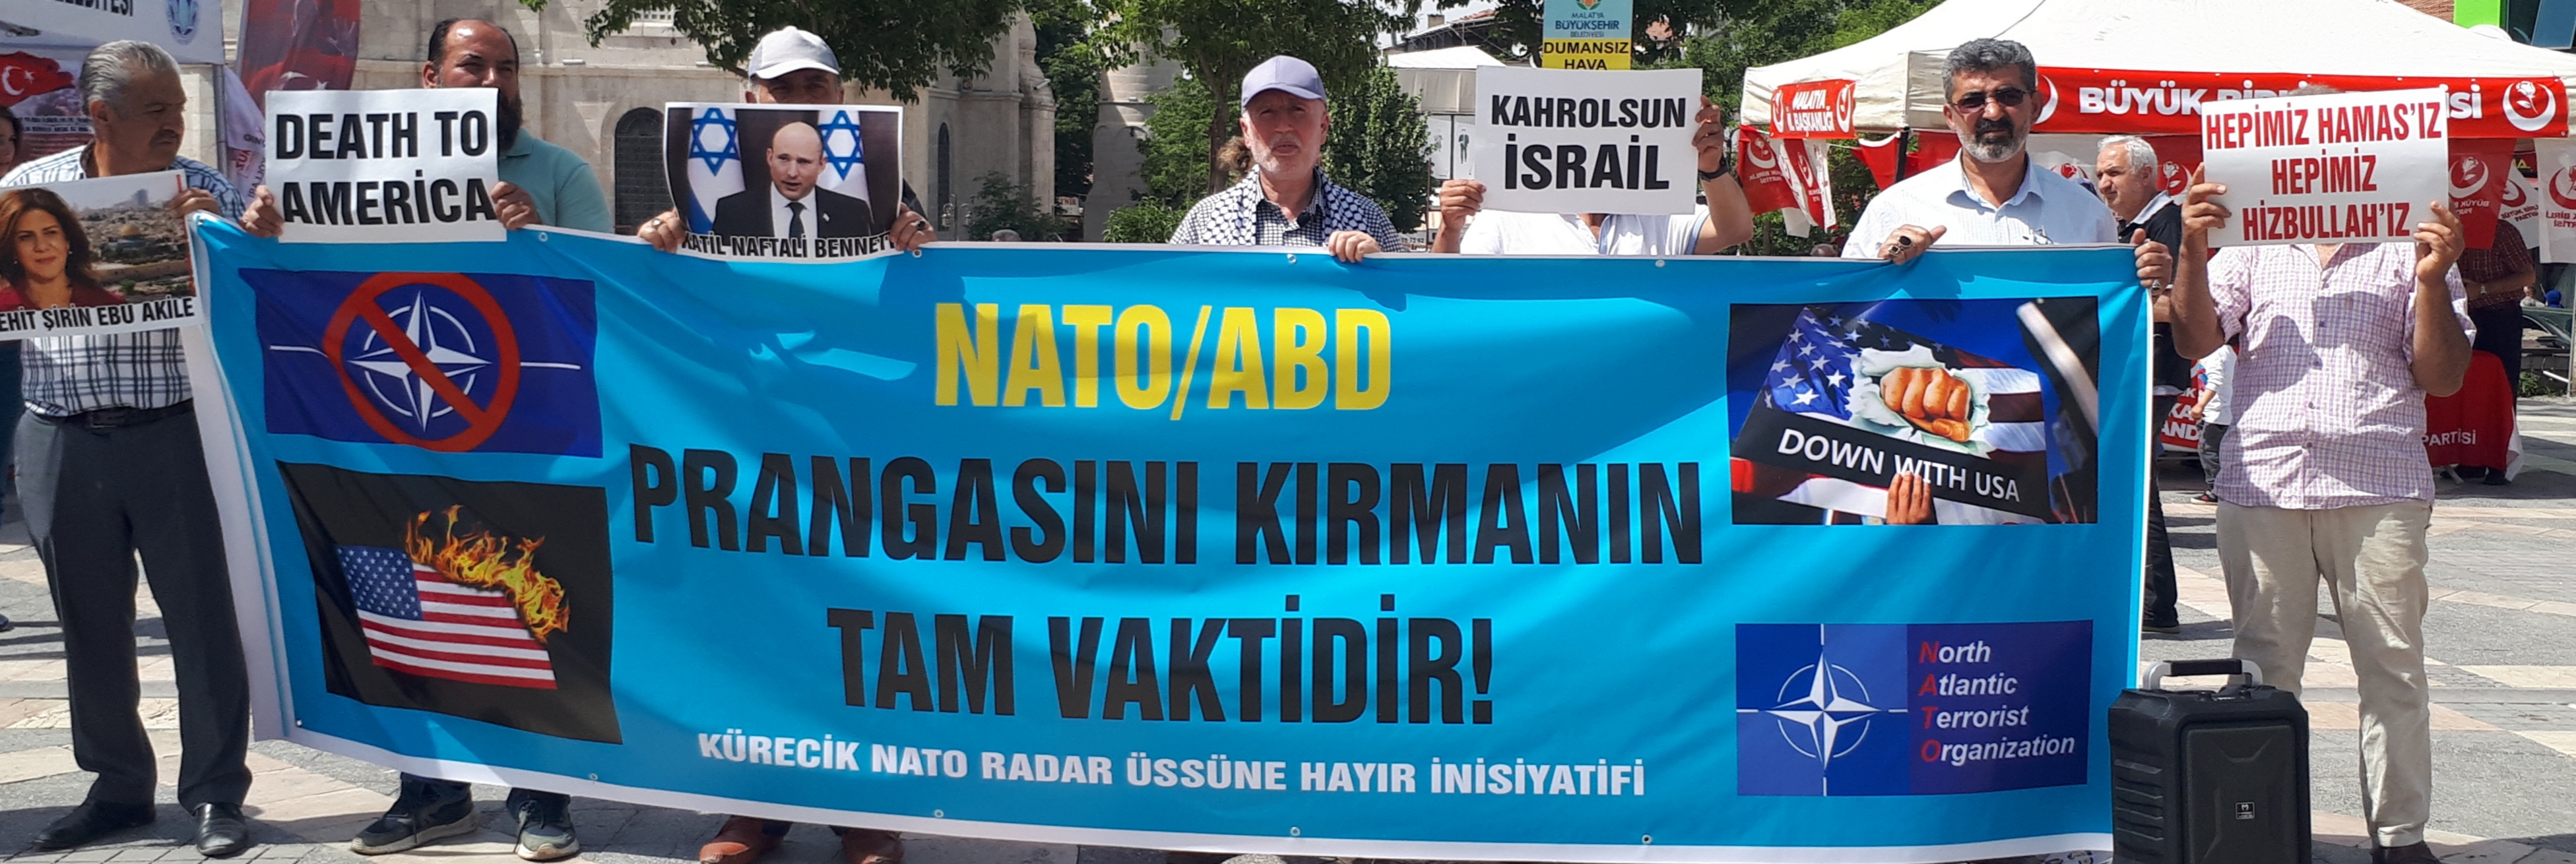 Malatya'da Nato'ya ve Üslerine Hayır Eylemi Düzenlendi (Foto-Video)